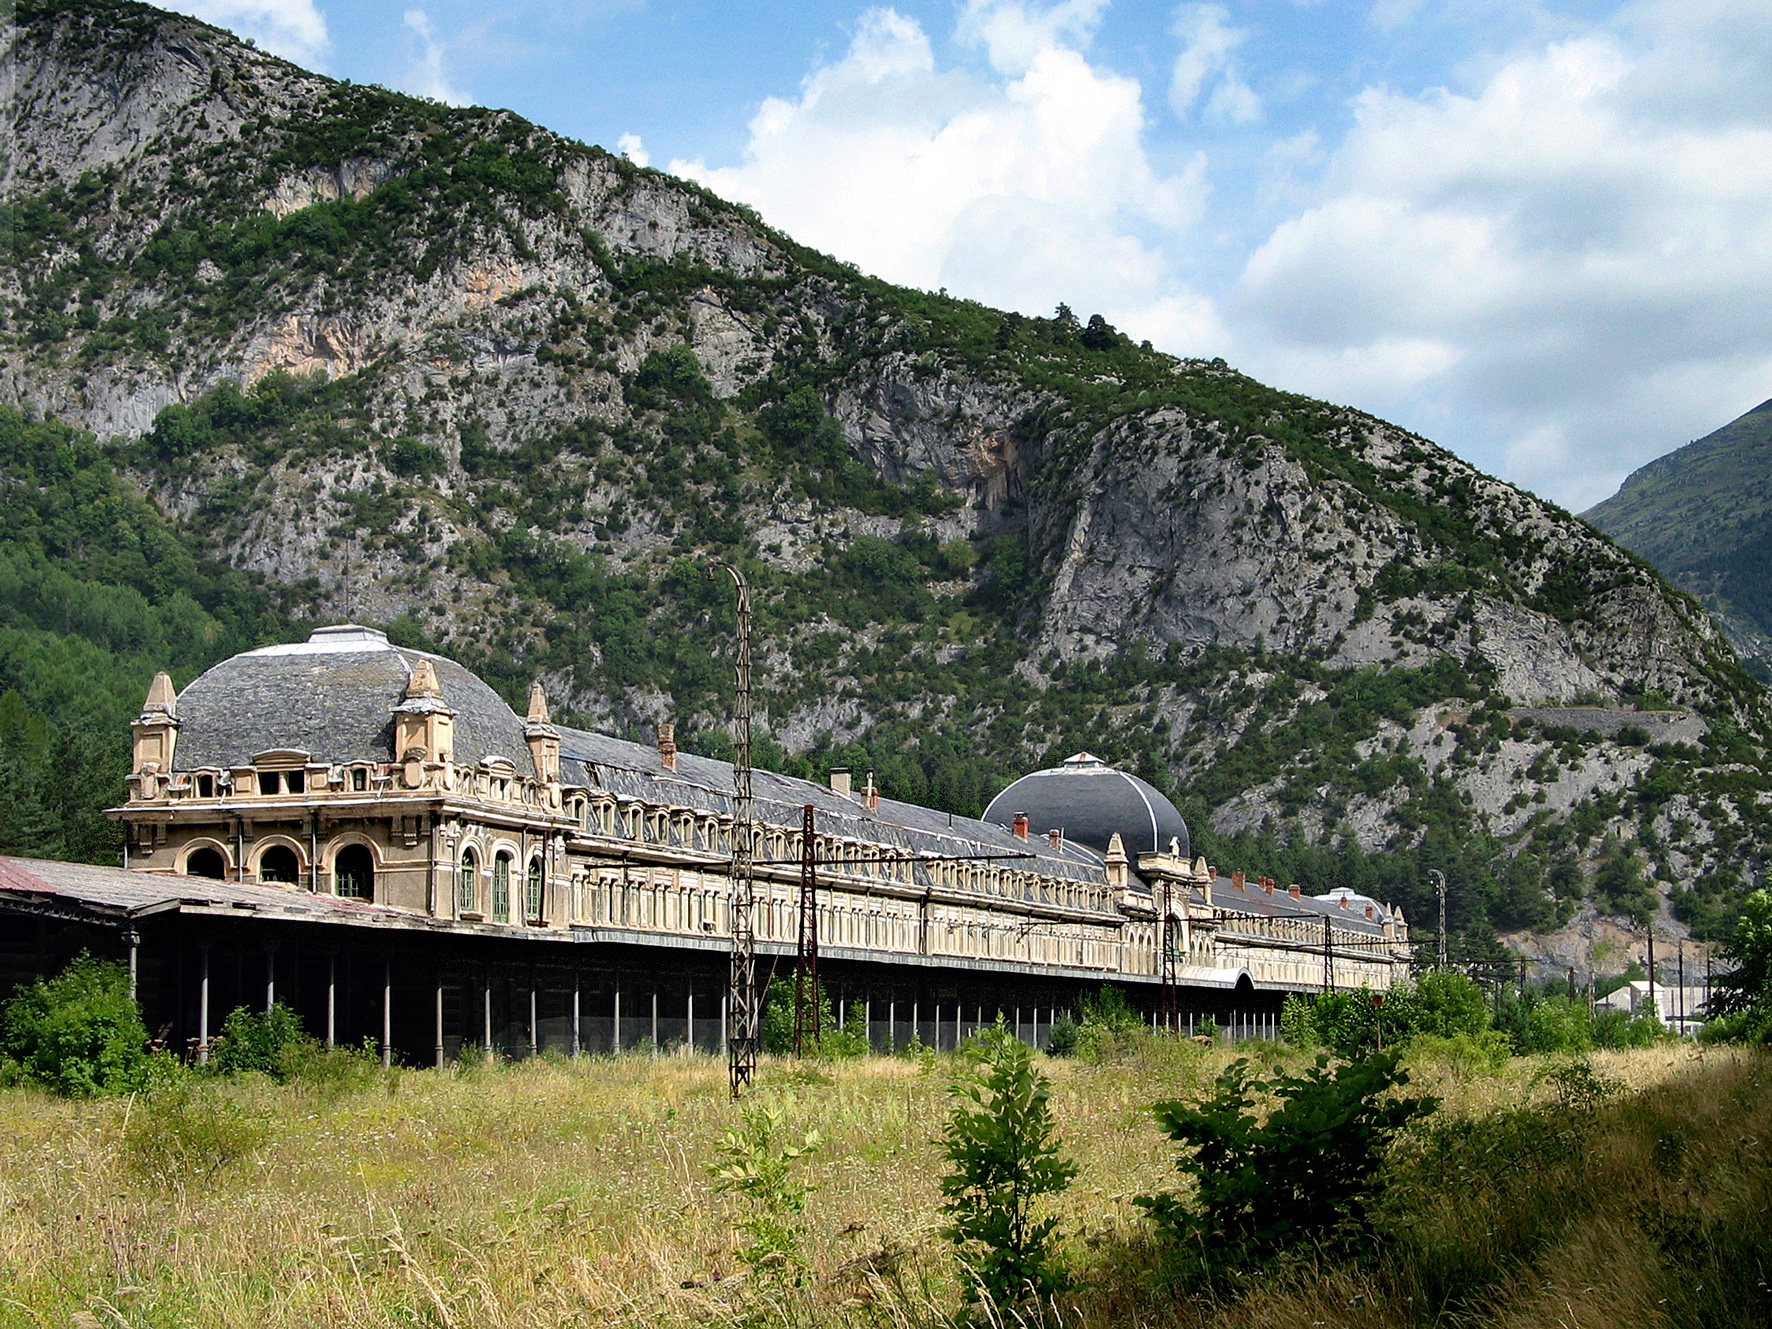 Fotografía con una vista general de la estación y la hierba donde debía haber vías y trenes